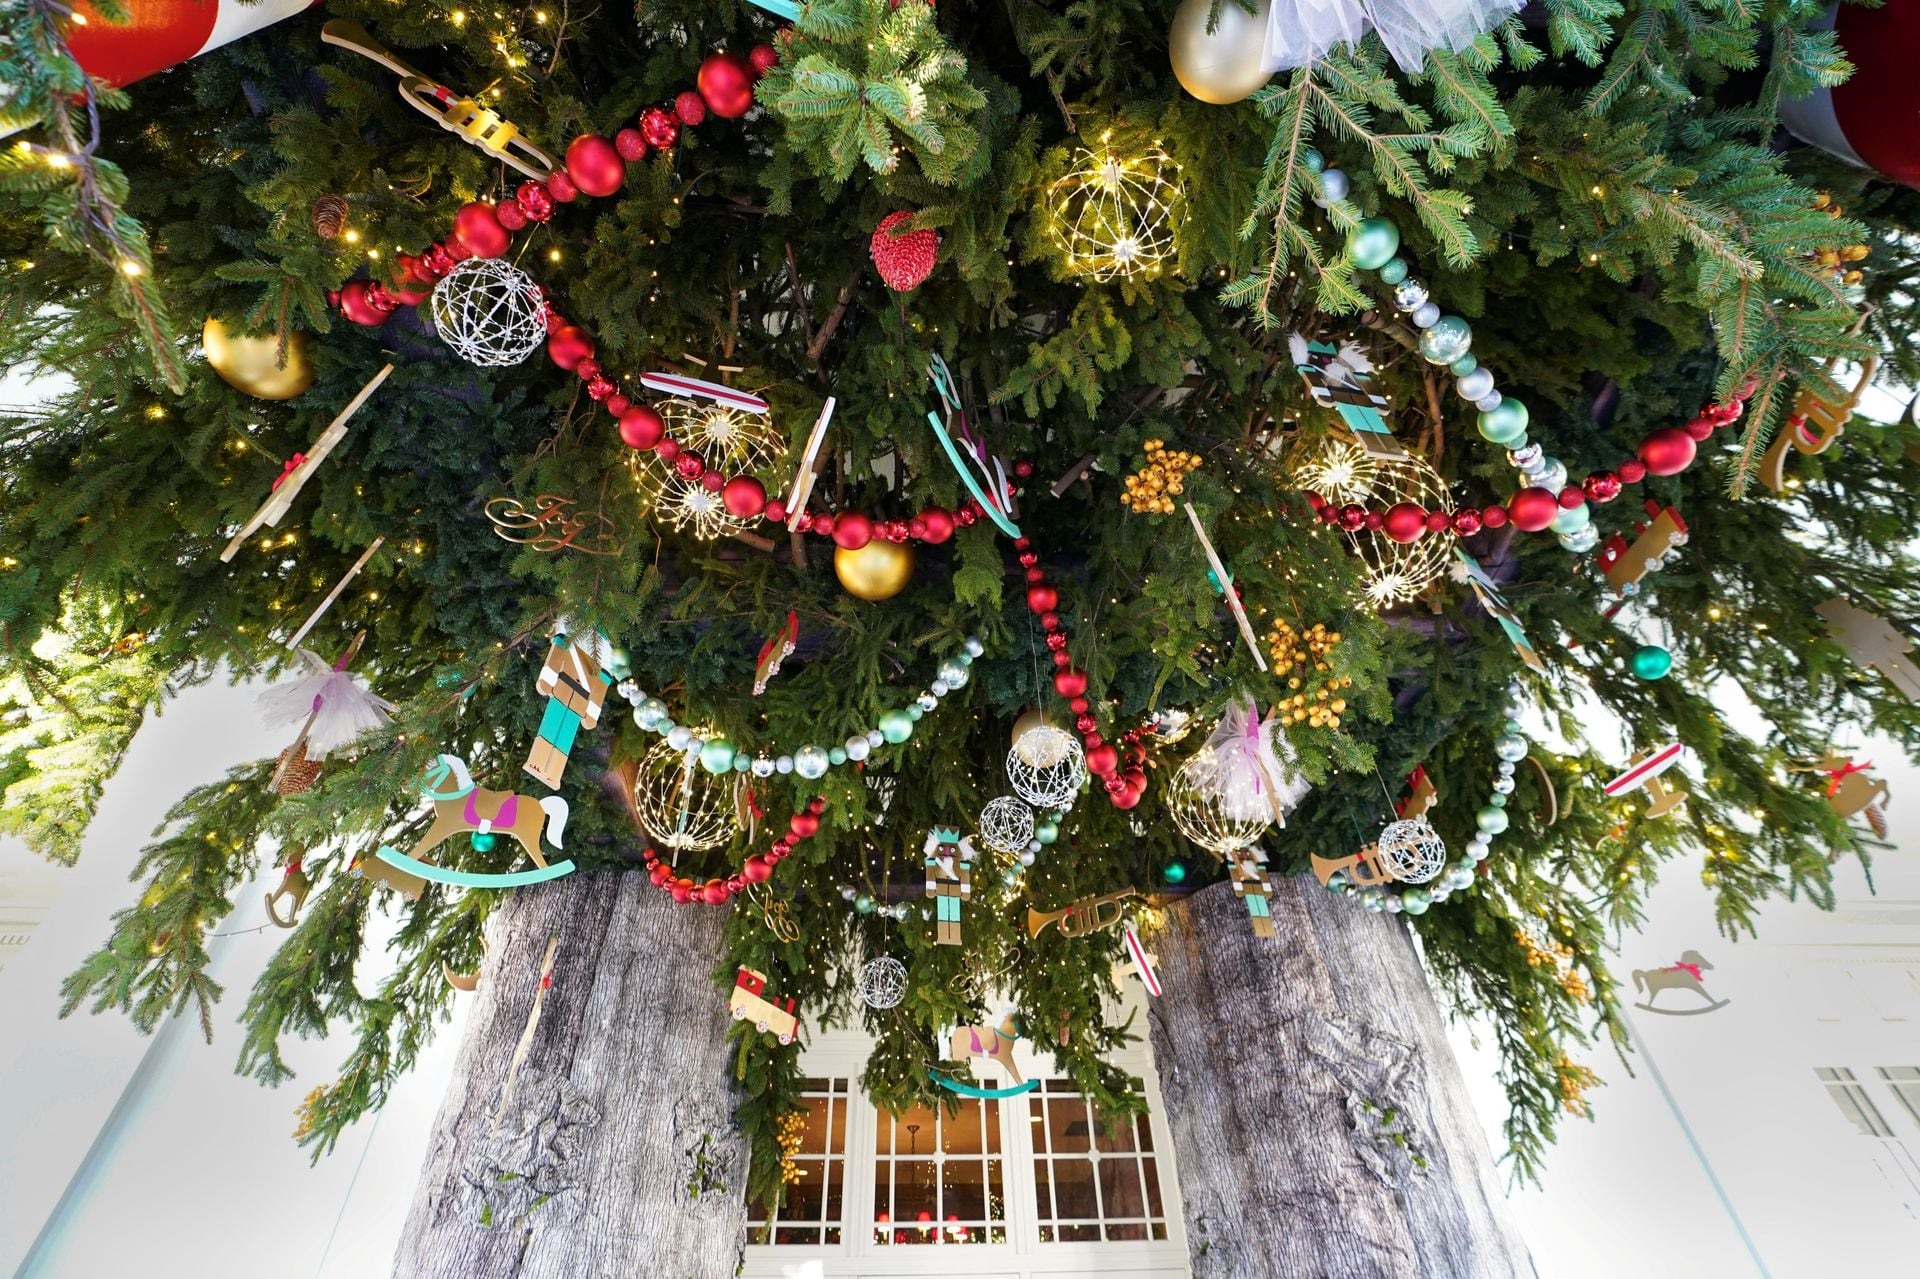 Nhà Trắng lung linh sắc màu đón Giáng sinh với 98 cây thông Noel và 140.000 bóng đèn - Ảnh 6.